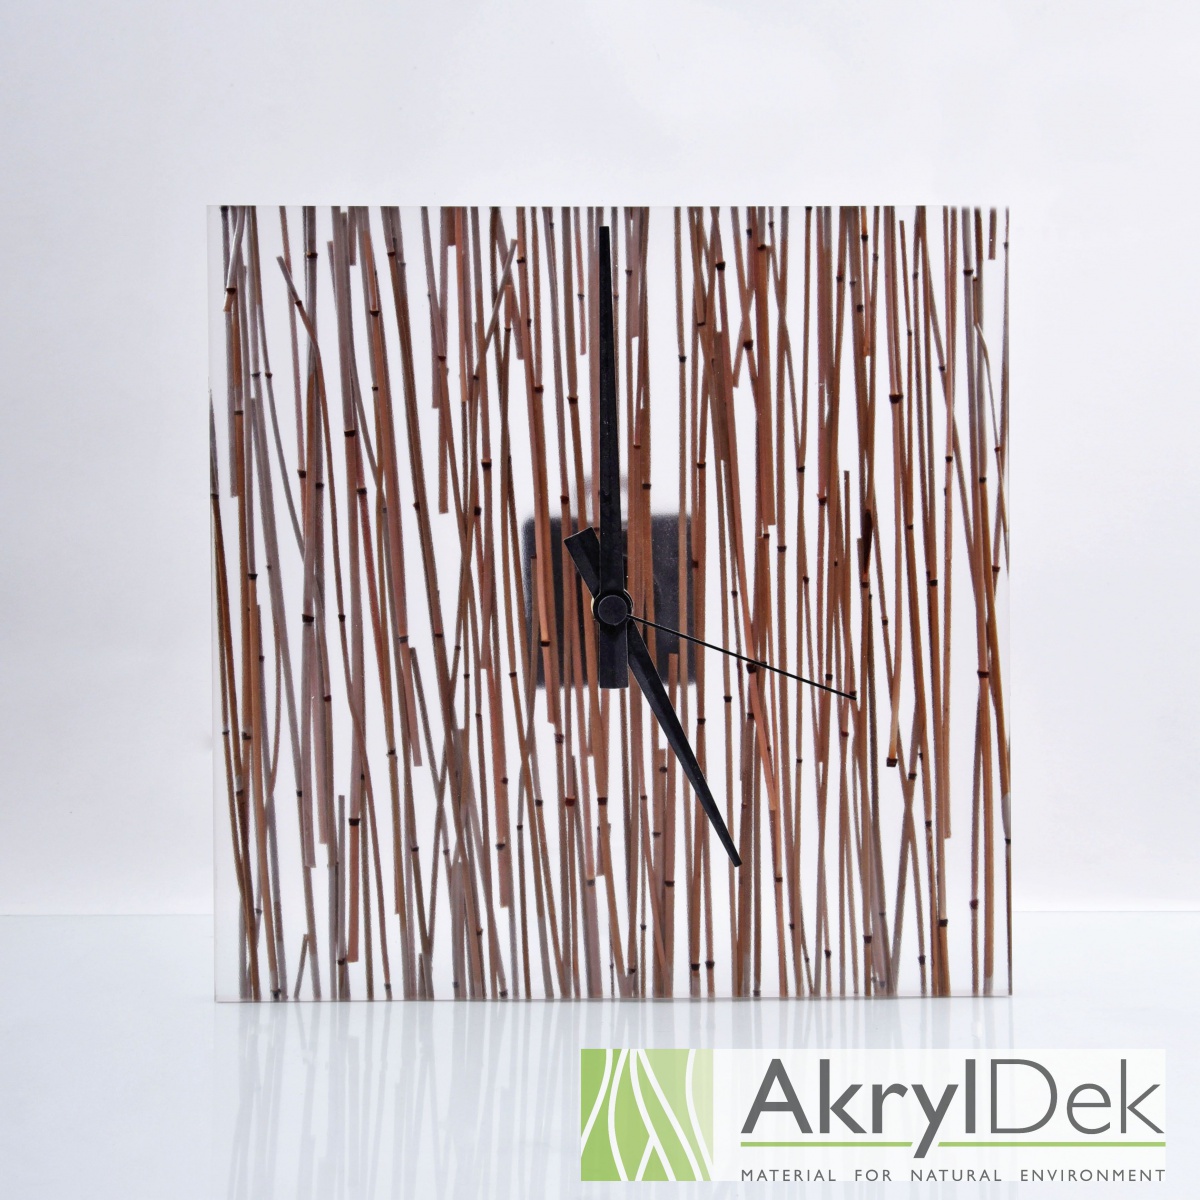 Nástěnné hodiny s bambusem - AkrylDek s.r.o.